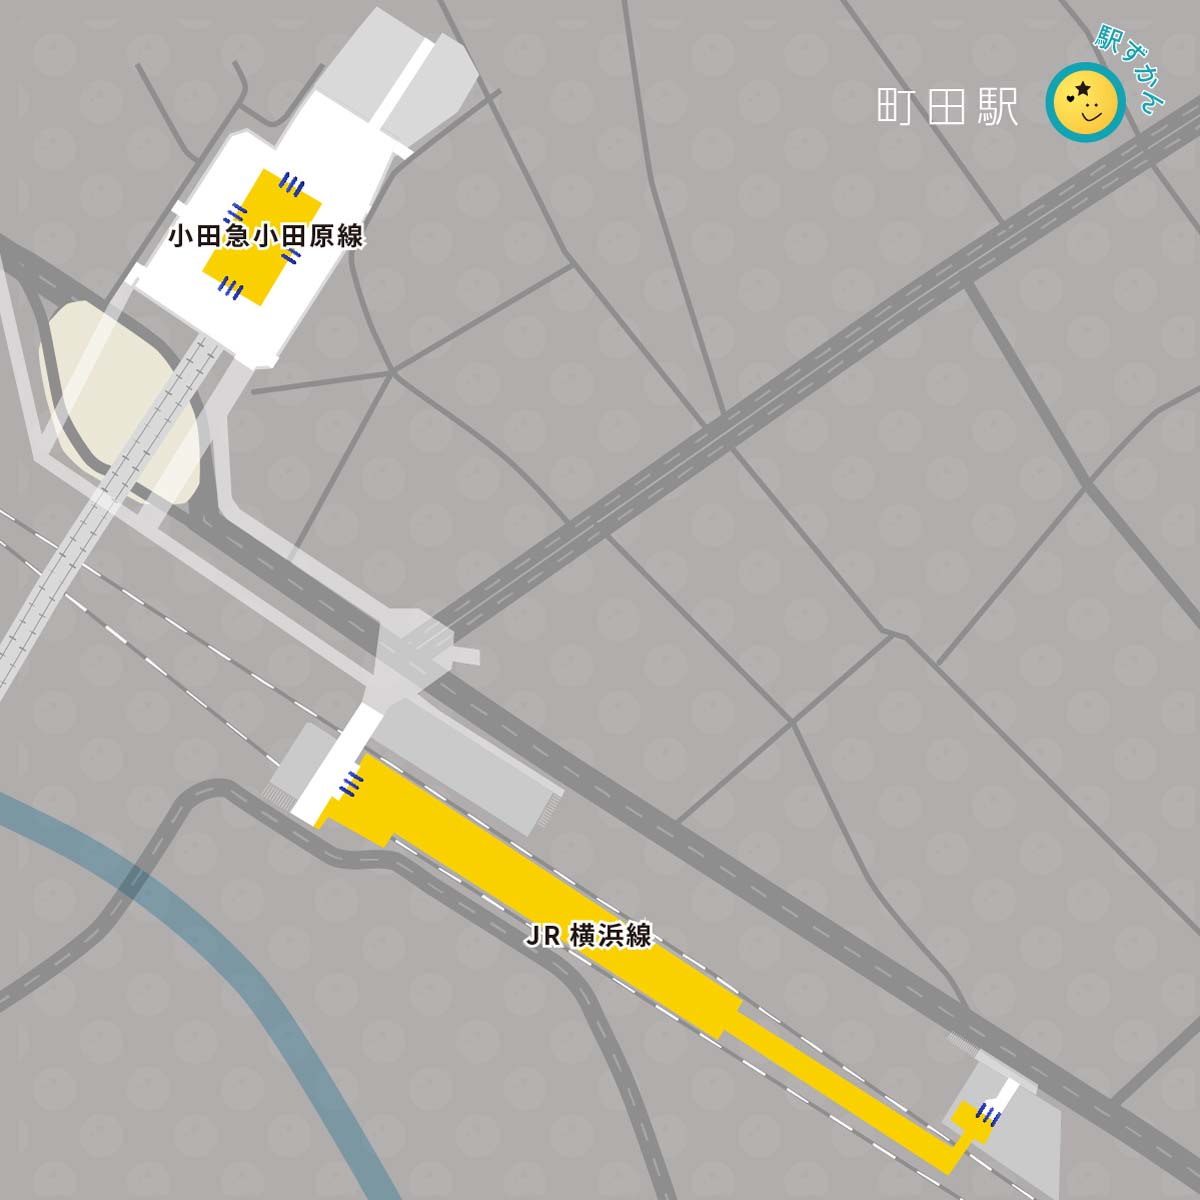 町田駅の路線図と周辺地図